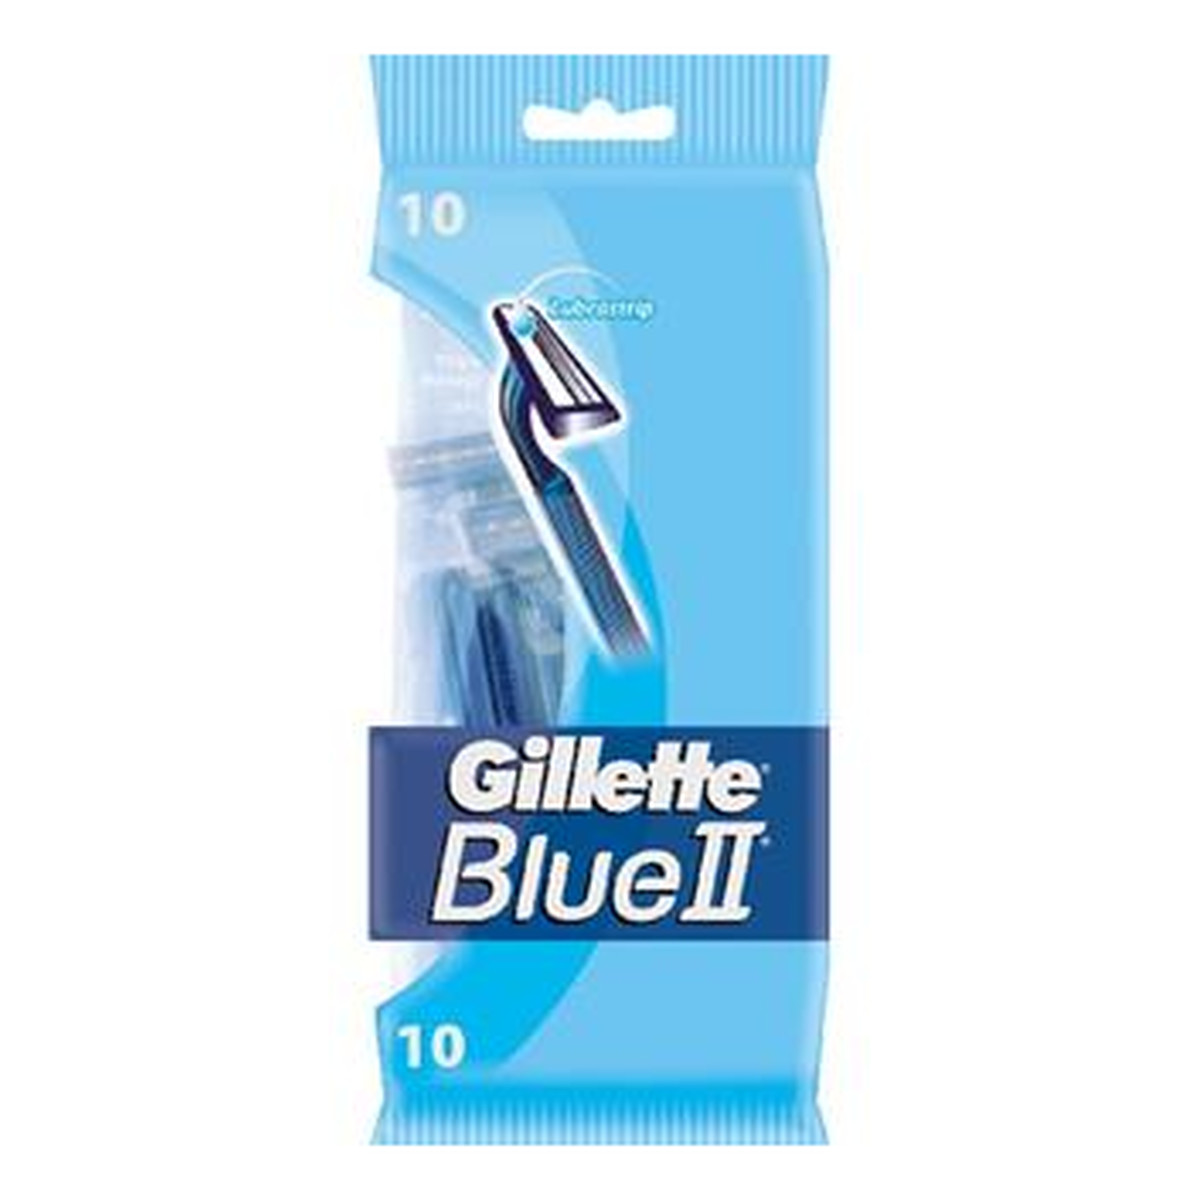 Gillette BLUE II JEDNORAZOWE MASZYNKI DO GOLENIA 10 SZTUK